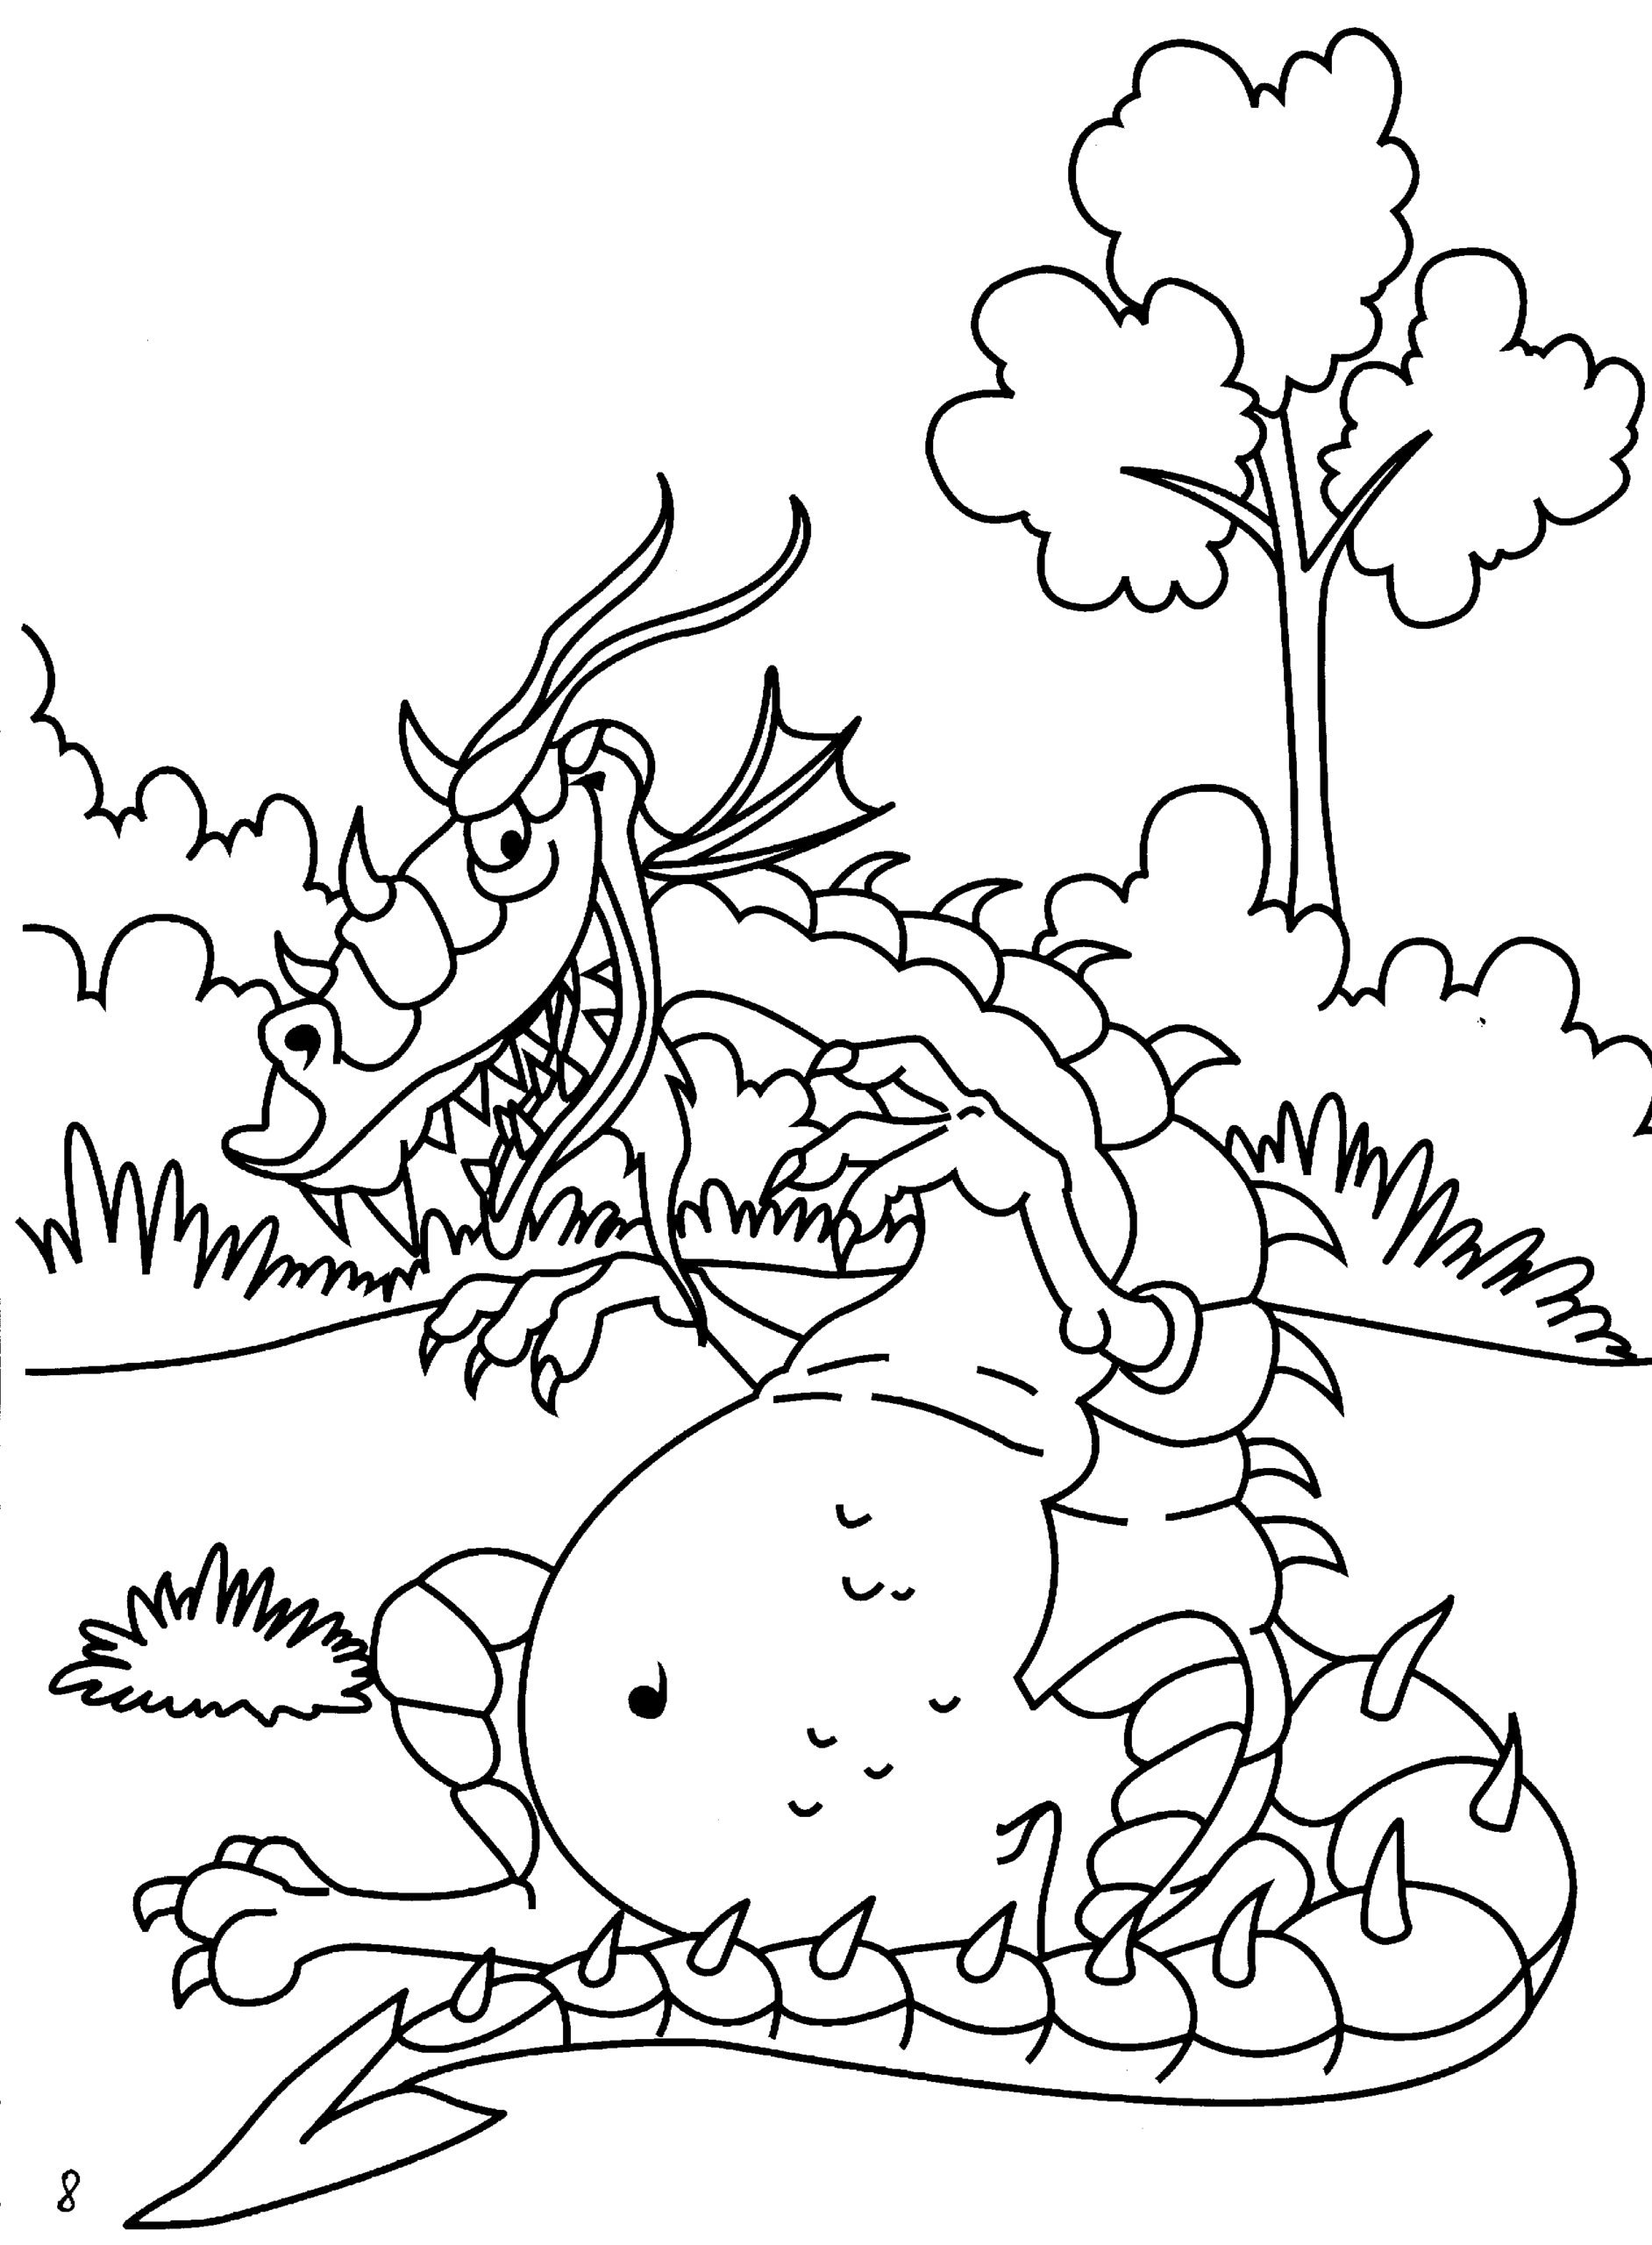 Kolorowanka smok brzydki i gruby siedzi na trawie przy drzewach i pokazuje szpony szczerząc zęby